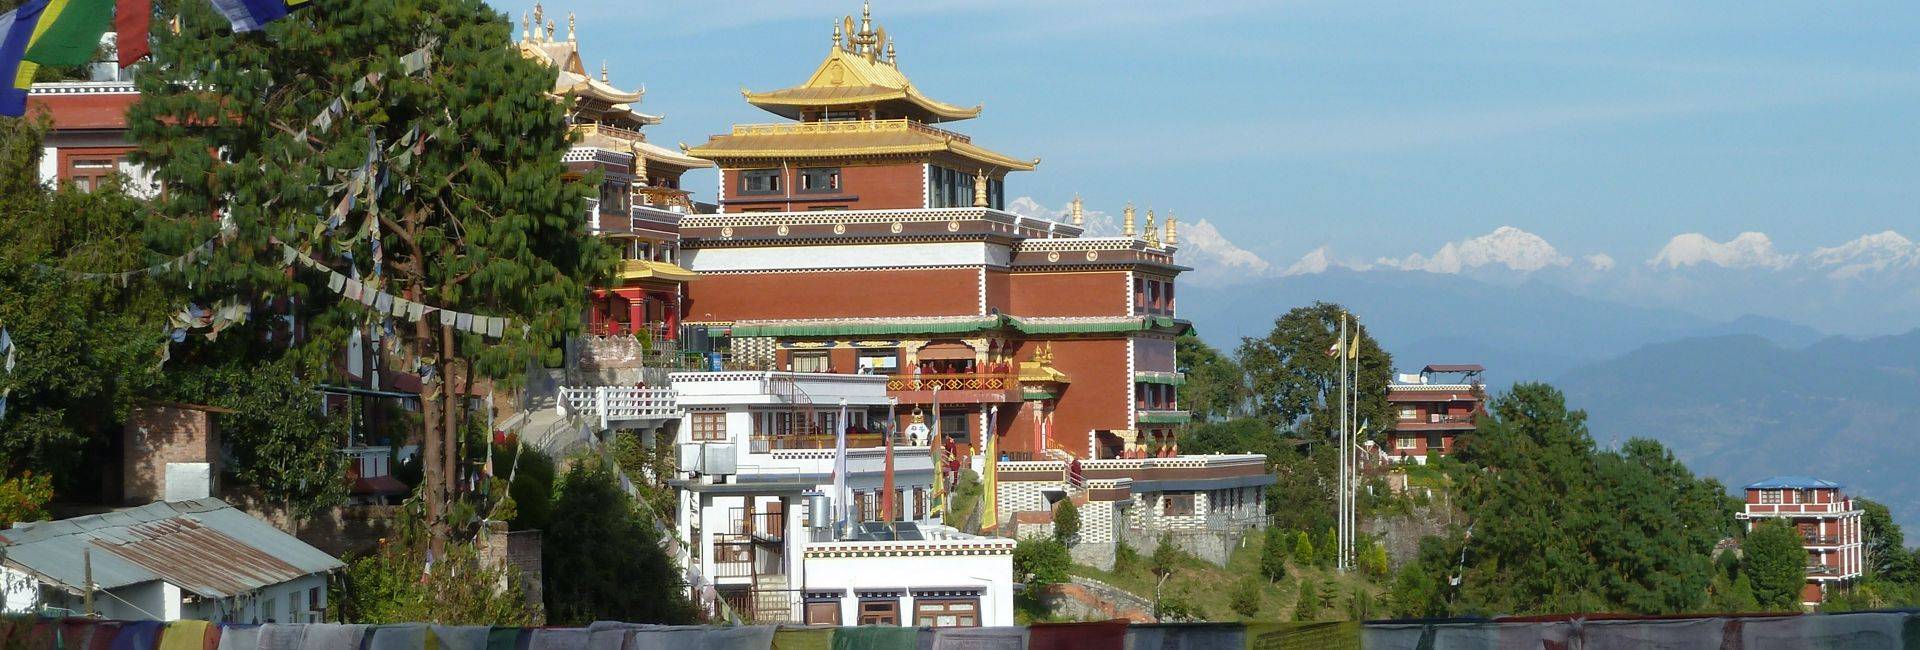 Kathmandu Valley trek in Nepal